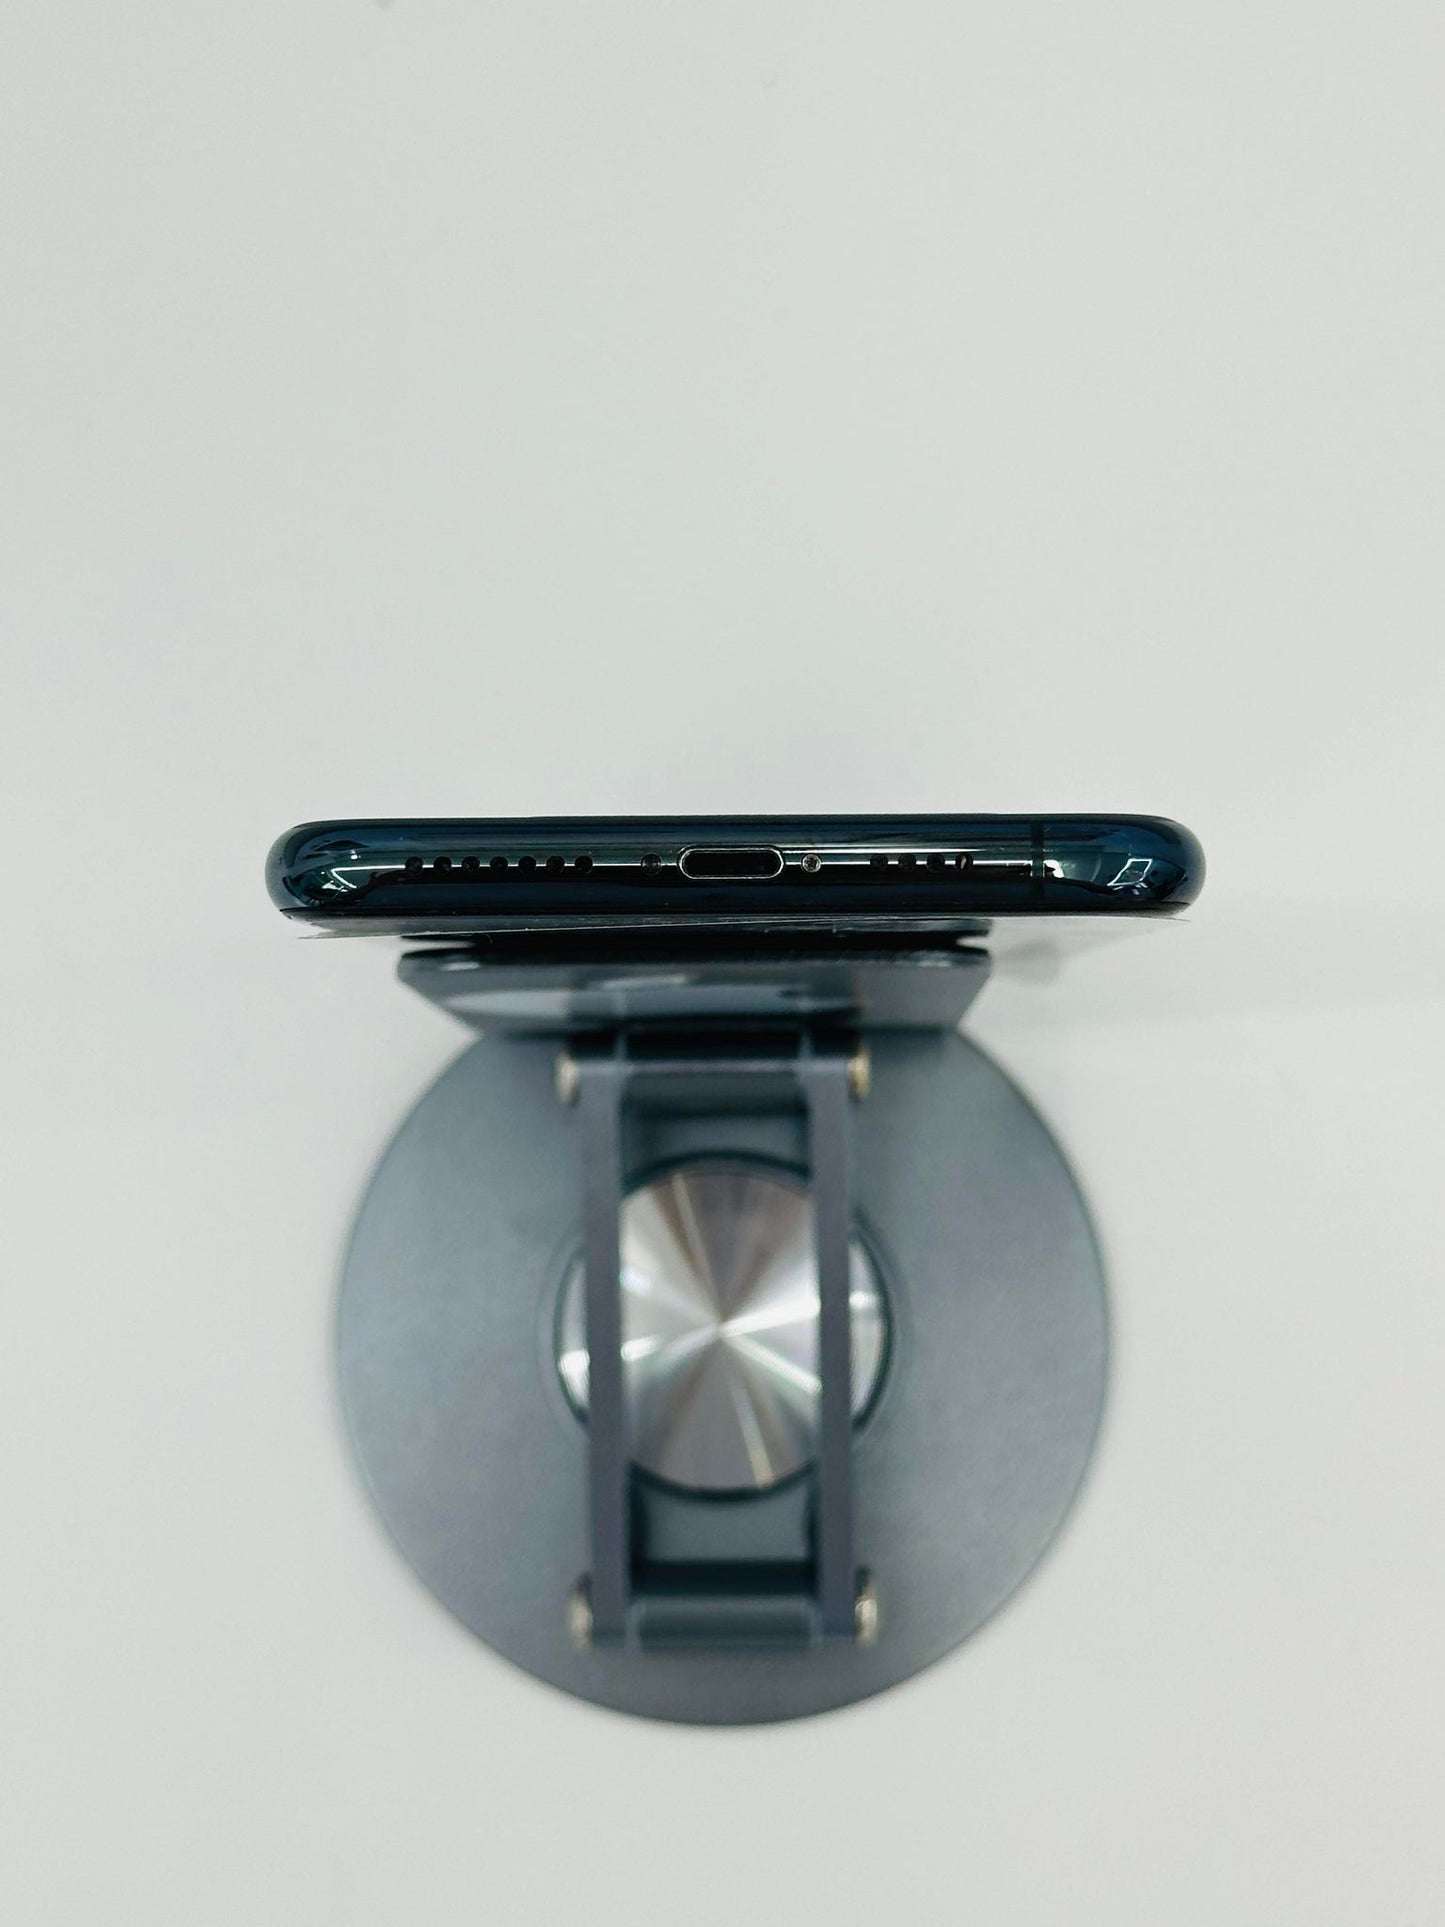 IPhone 11 ProMax 64gb Màu Xanh lá, Pin thay mới 100%, đã thay màn, máy xước nhẹ